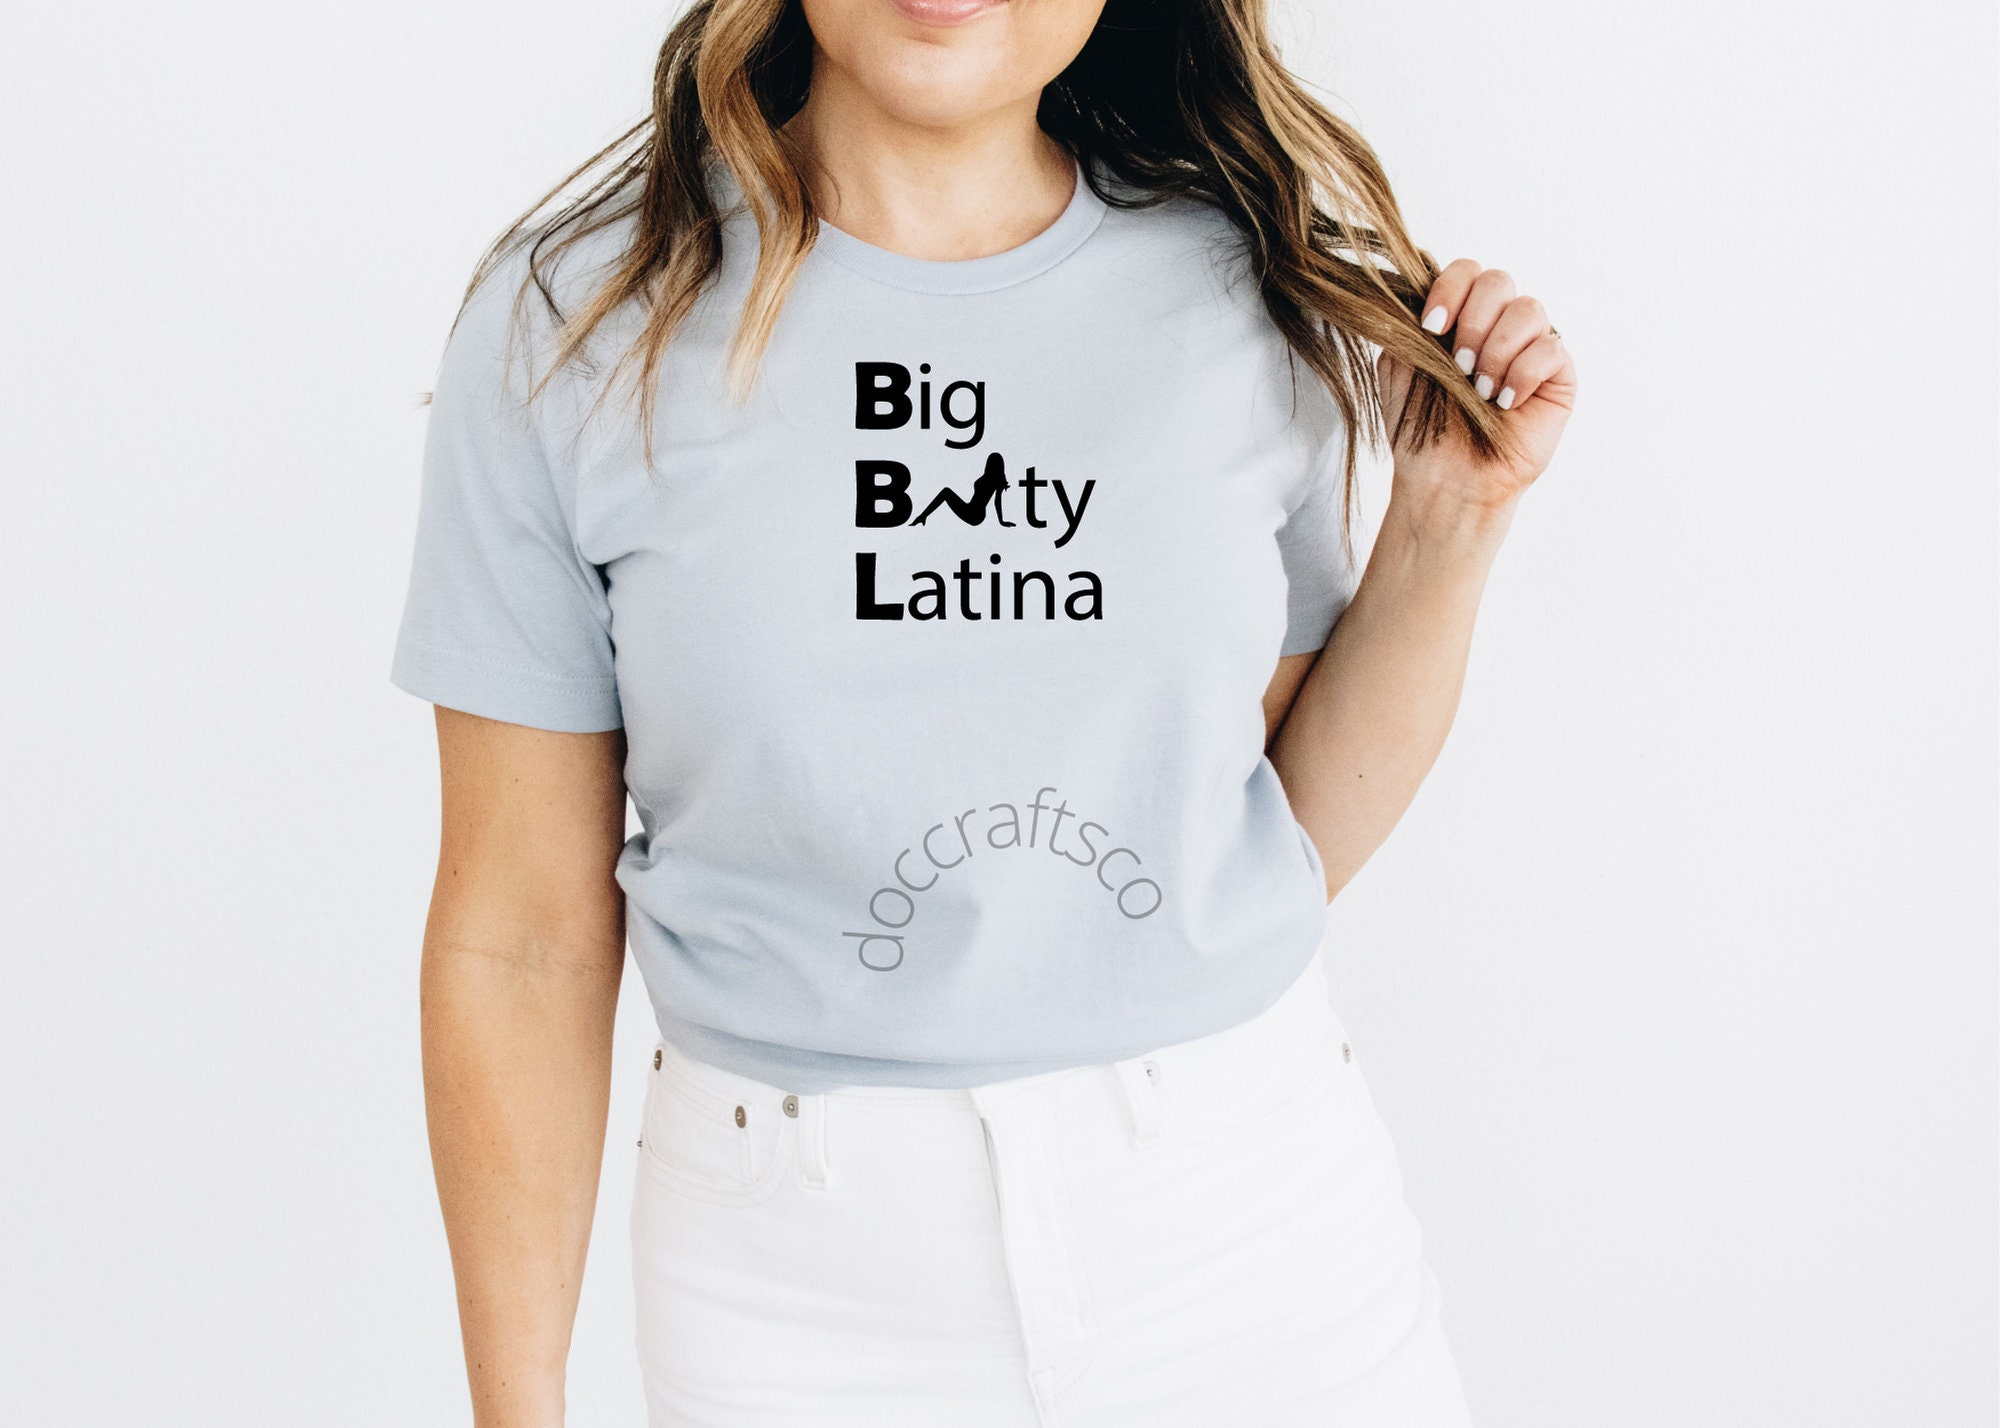 Big Ass Hot Latina Girls